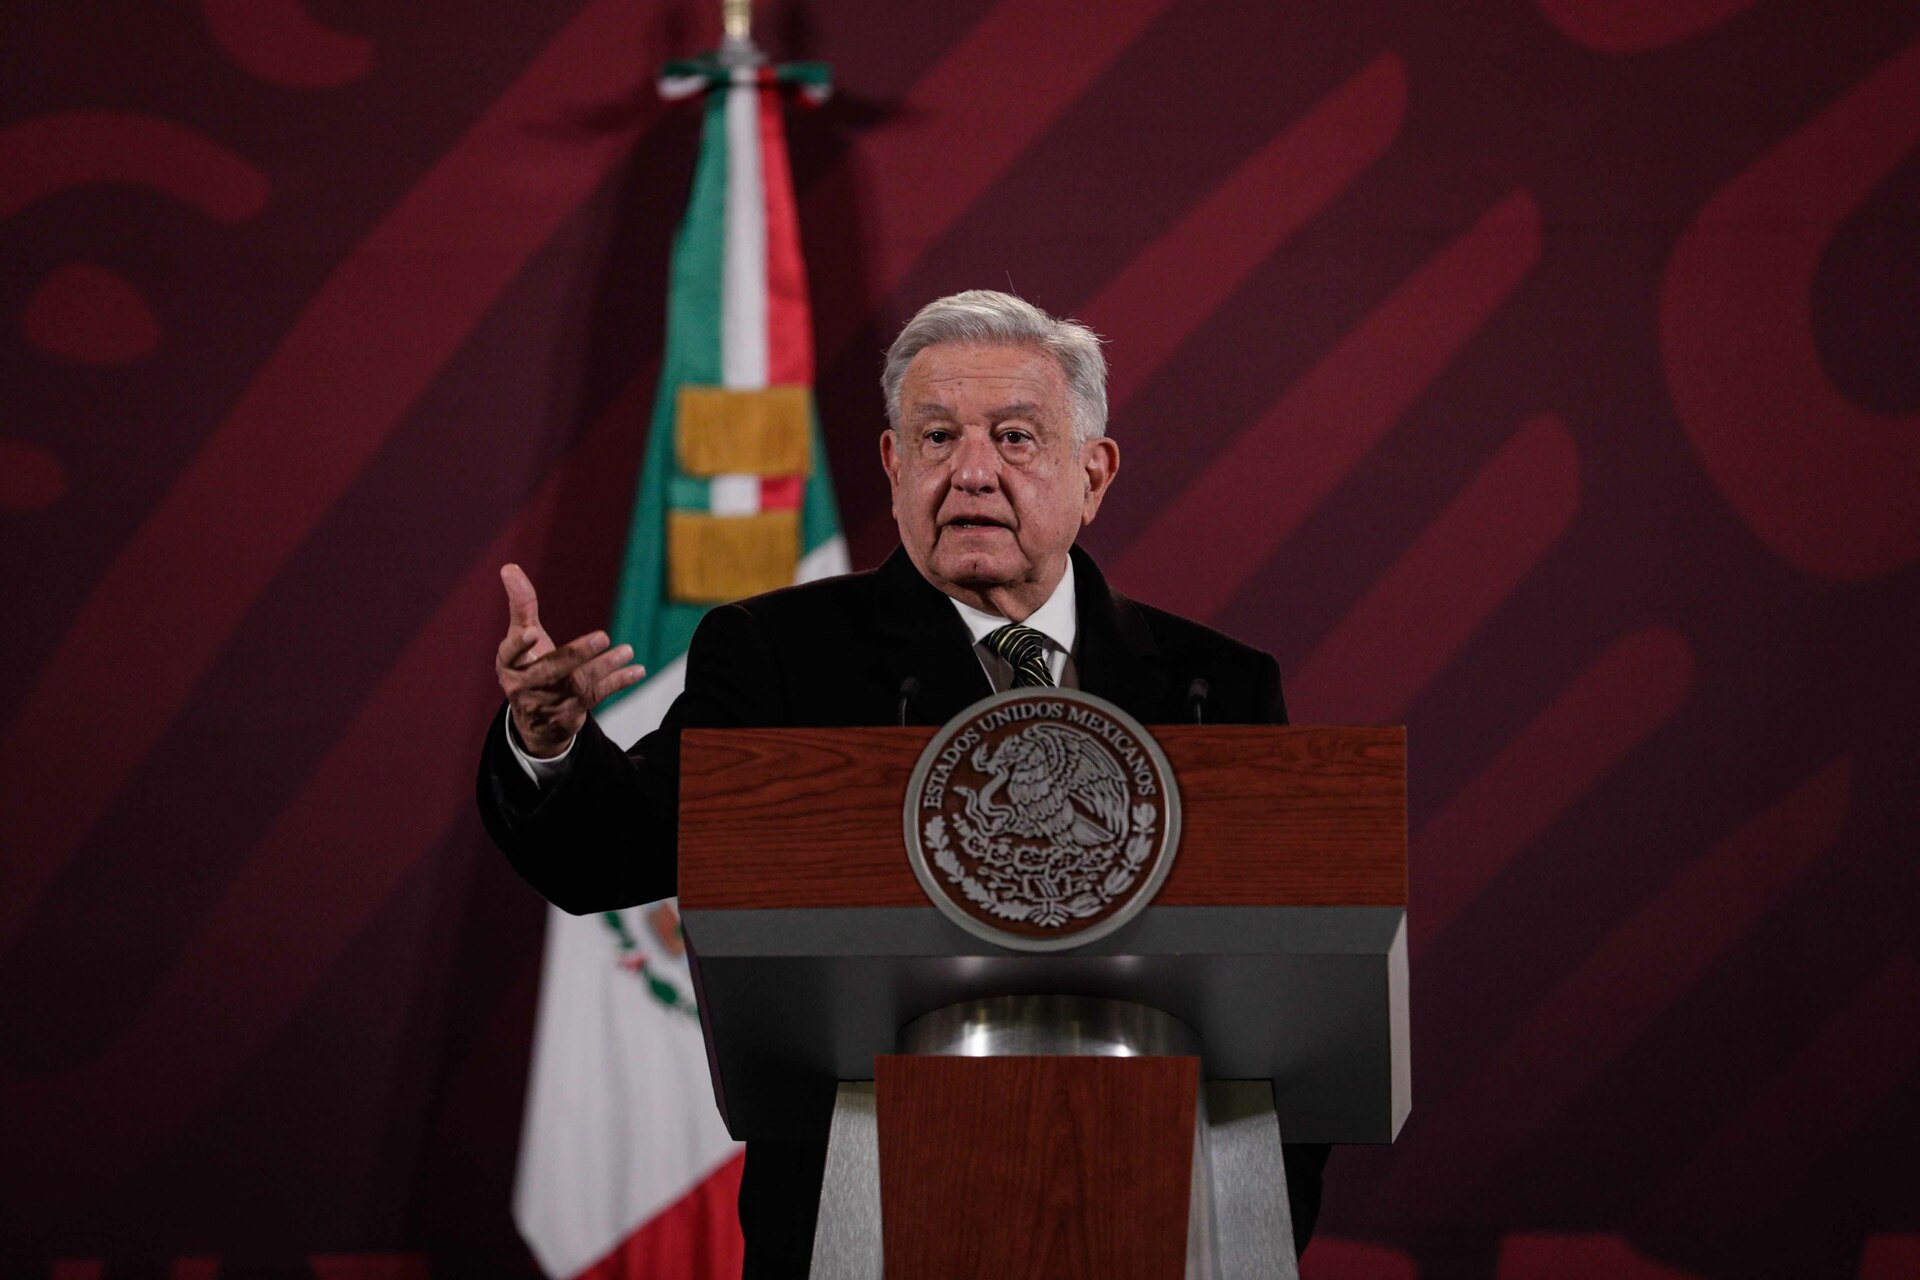 En su conferencia mañanera de este lunes 11 de diciembre en Palacio Nacional, López Obrador expresó: “Respeto a la familia, ya la señora estaba grande y no tengo más comentario”. (ARCHIVO)